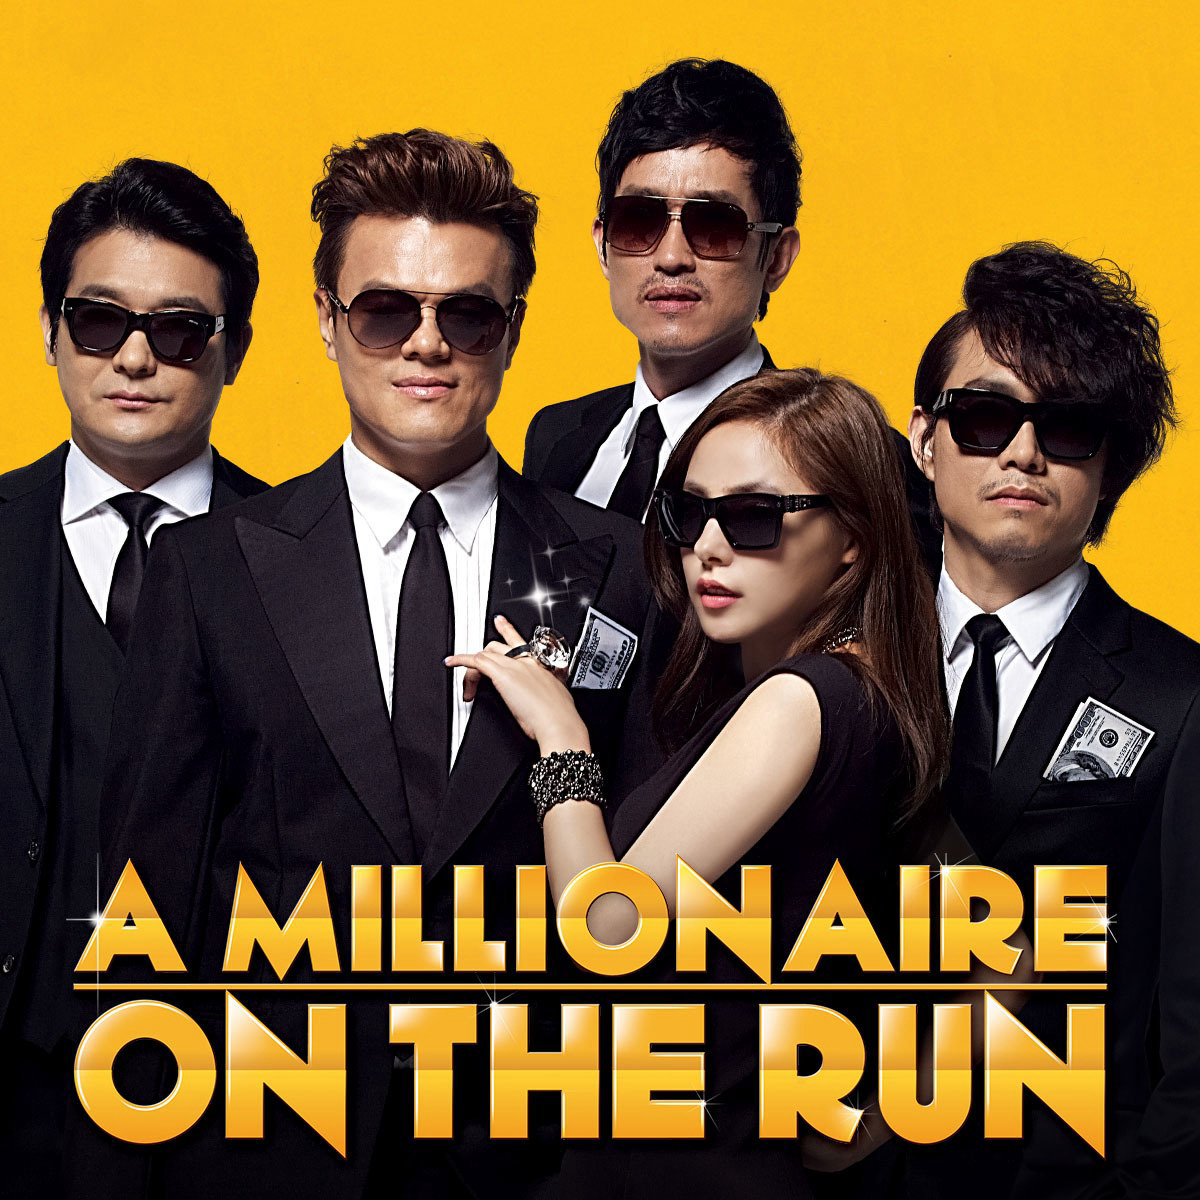 A Millionaire on the Run / A Millionaire on the Run (2013)